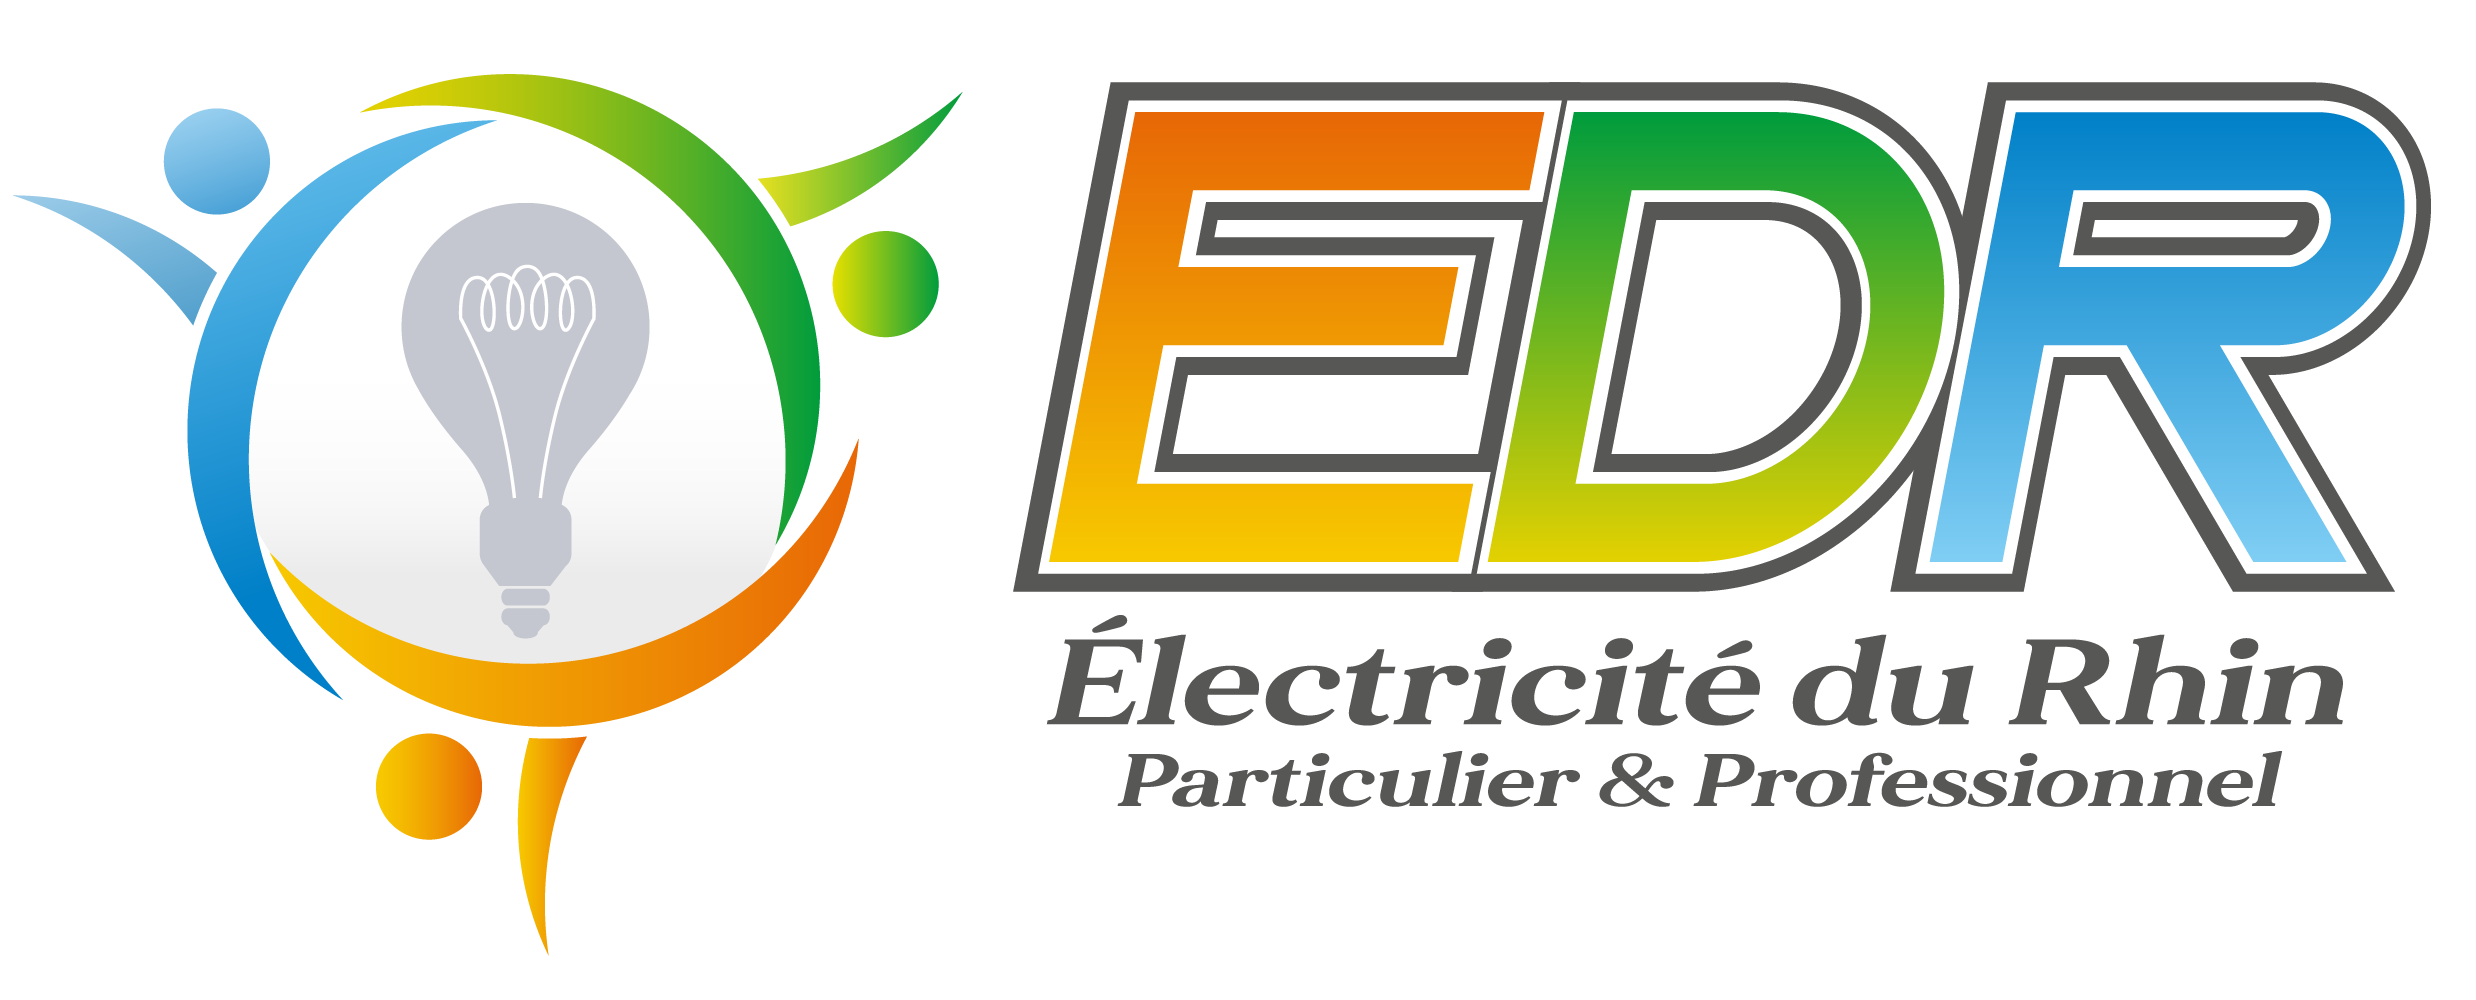 logo-ELECTRICITE DU RHIN